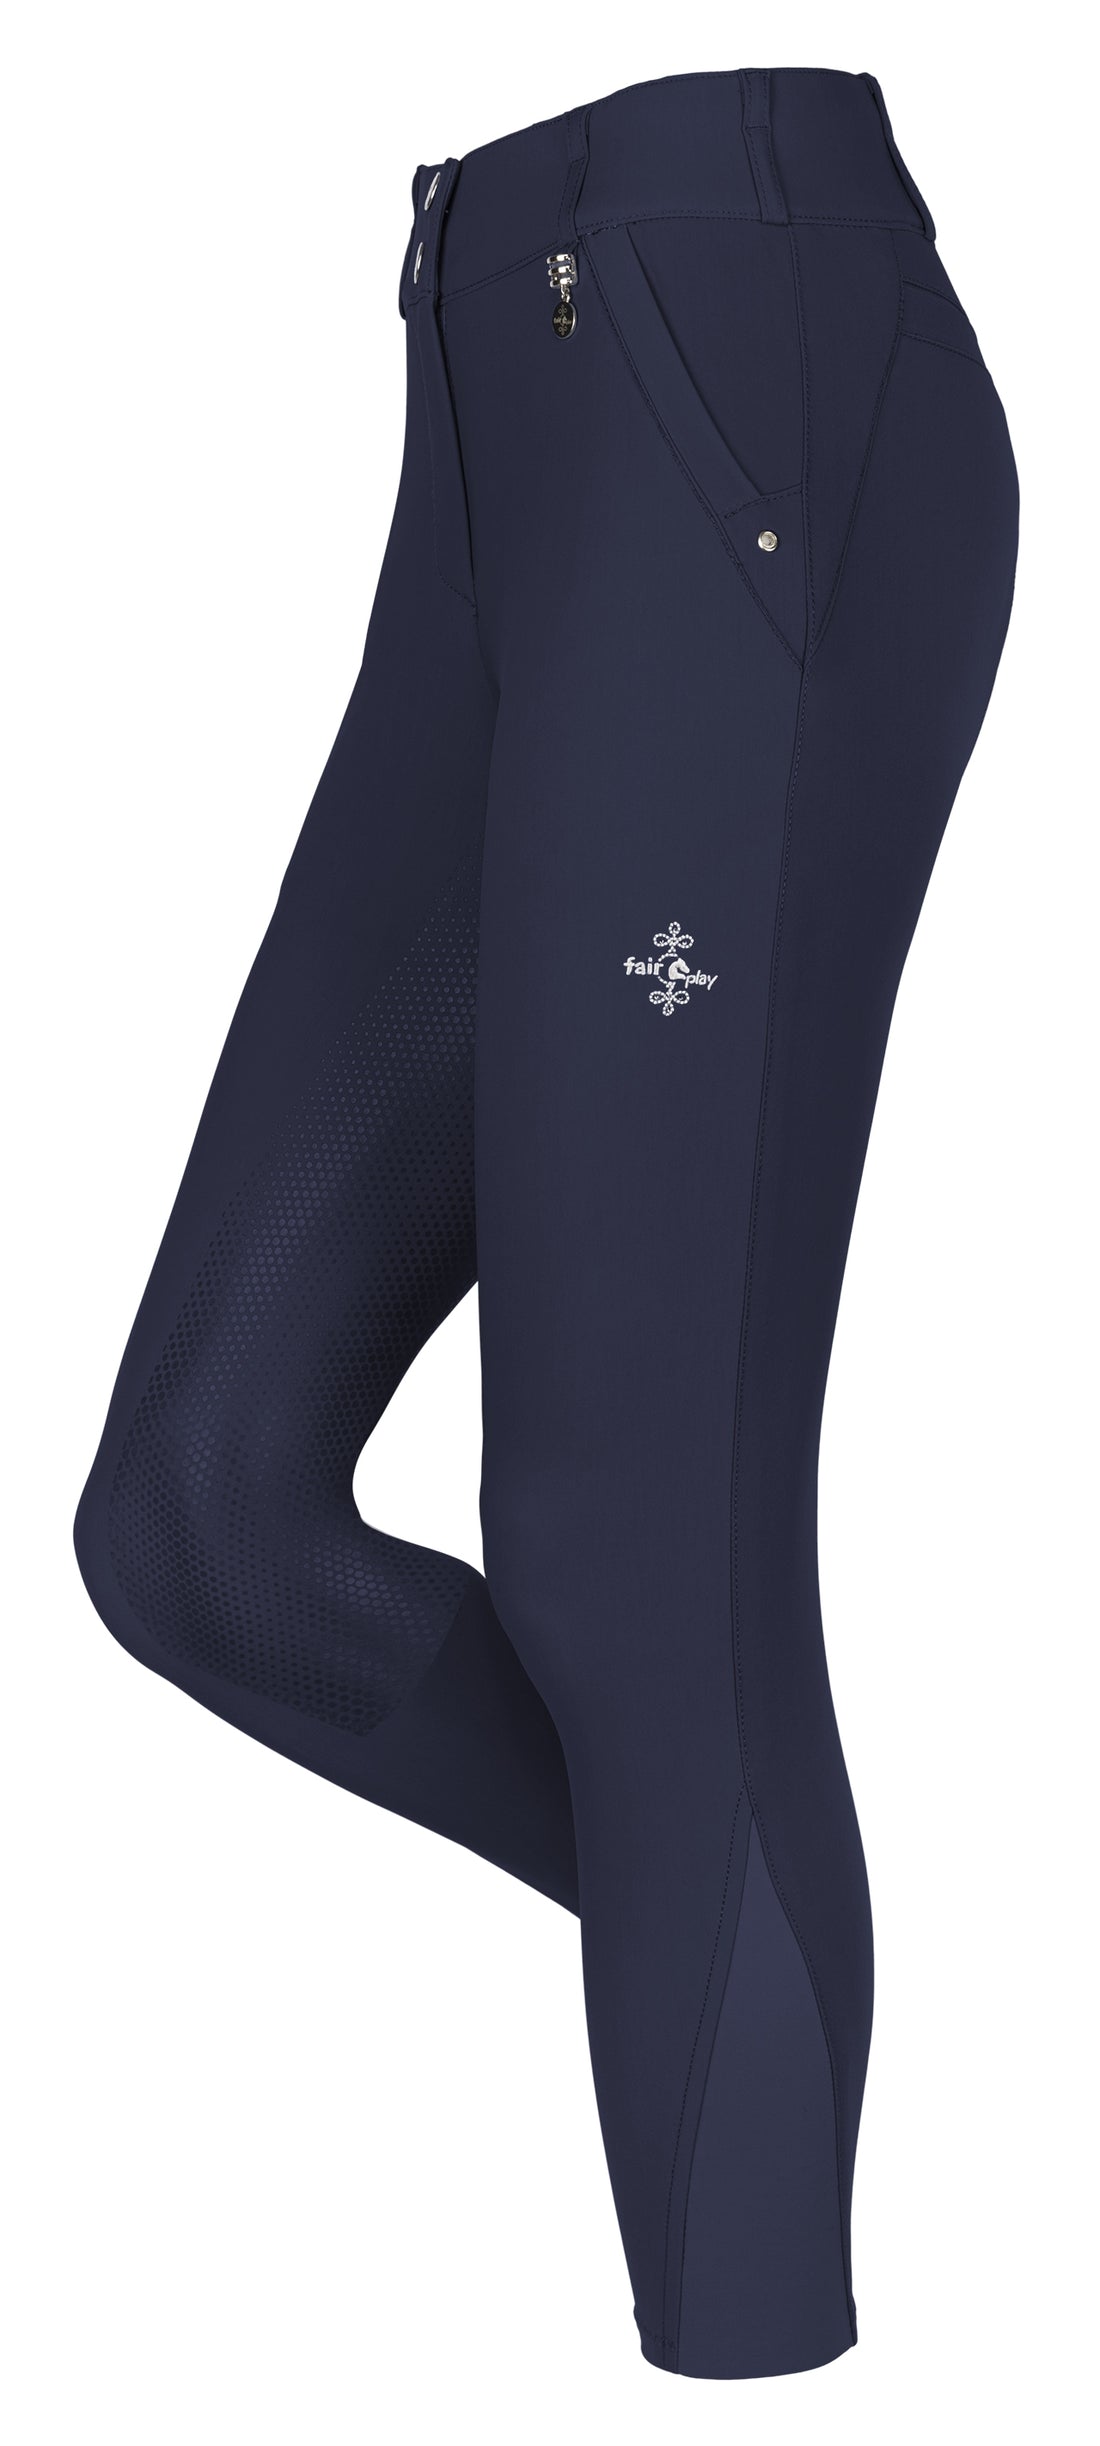 FairPlay Jasmine Fuld Grip ride bukser i helt enkel navy. Lavet med en højtaljede, som giver en god pasform. Fremstillet af et elastisk og åndbart stof for optimal komfort.